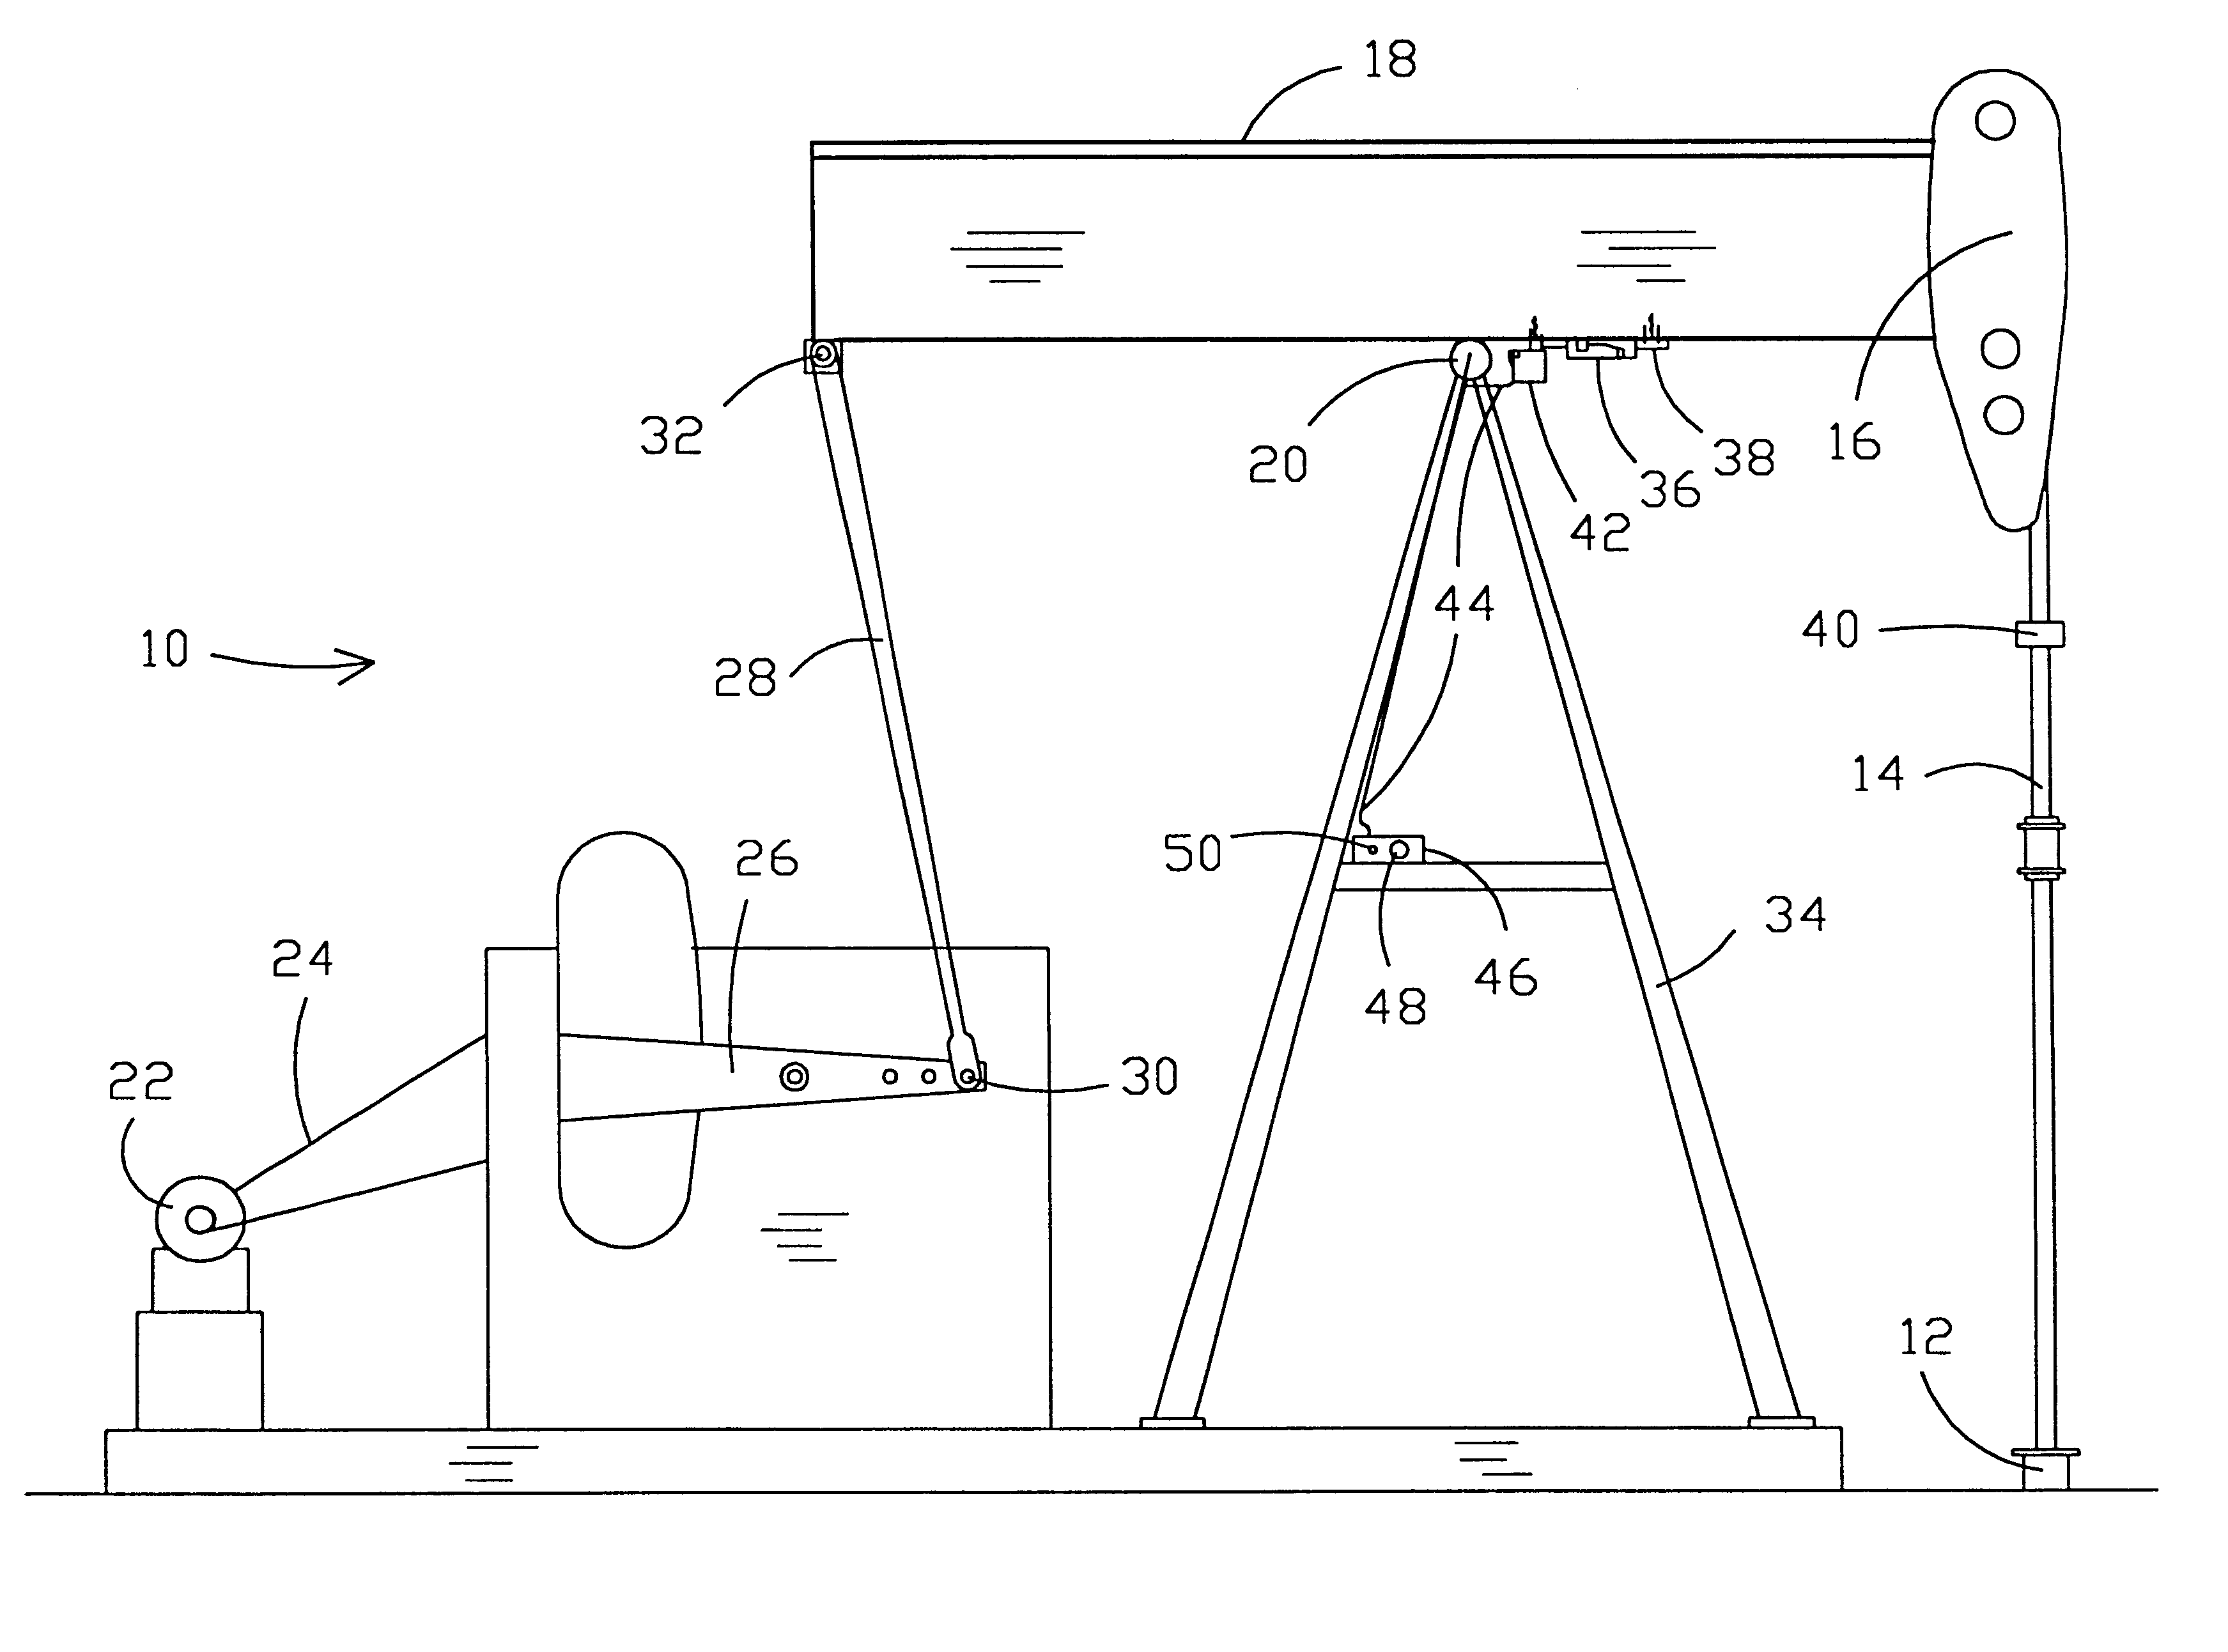 Pumpjack dynamometer and method